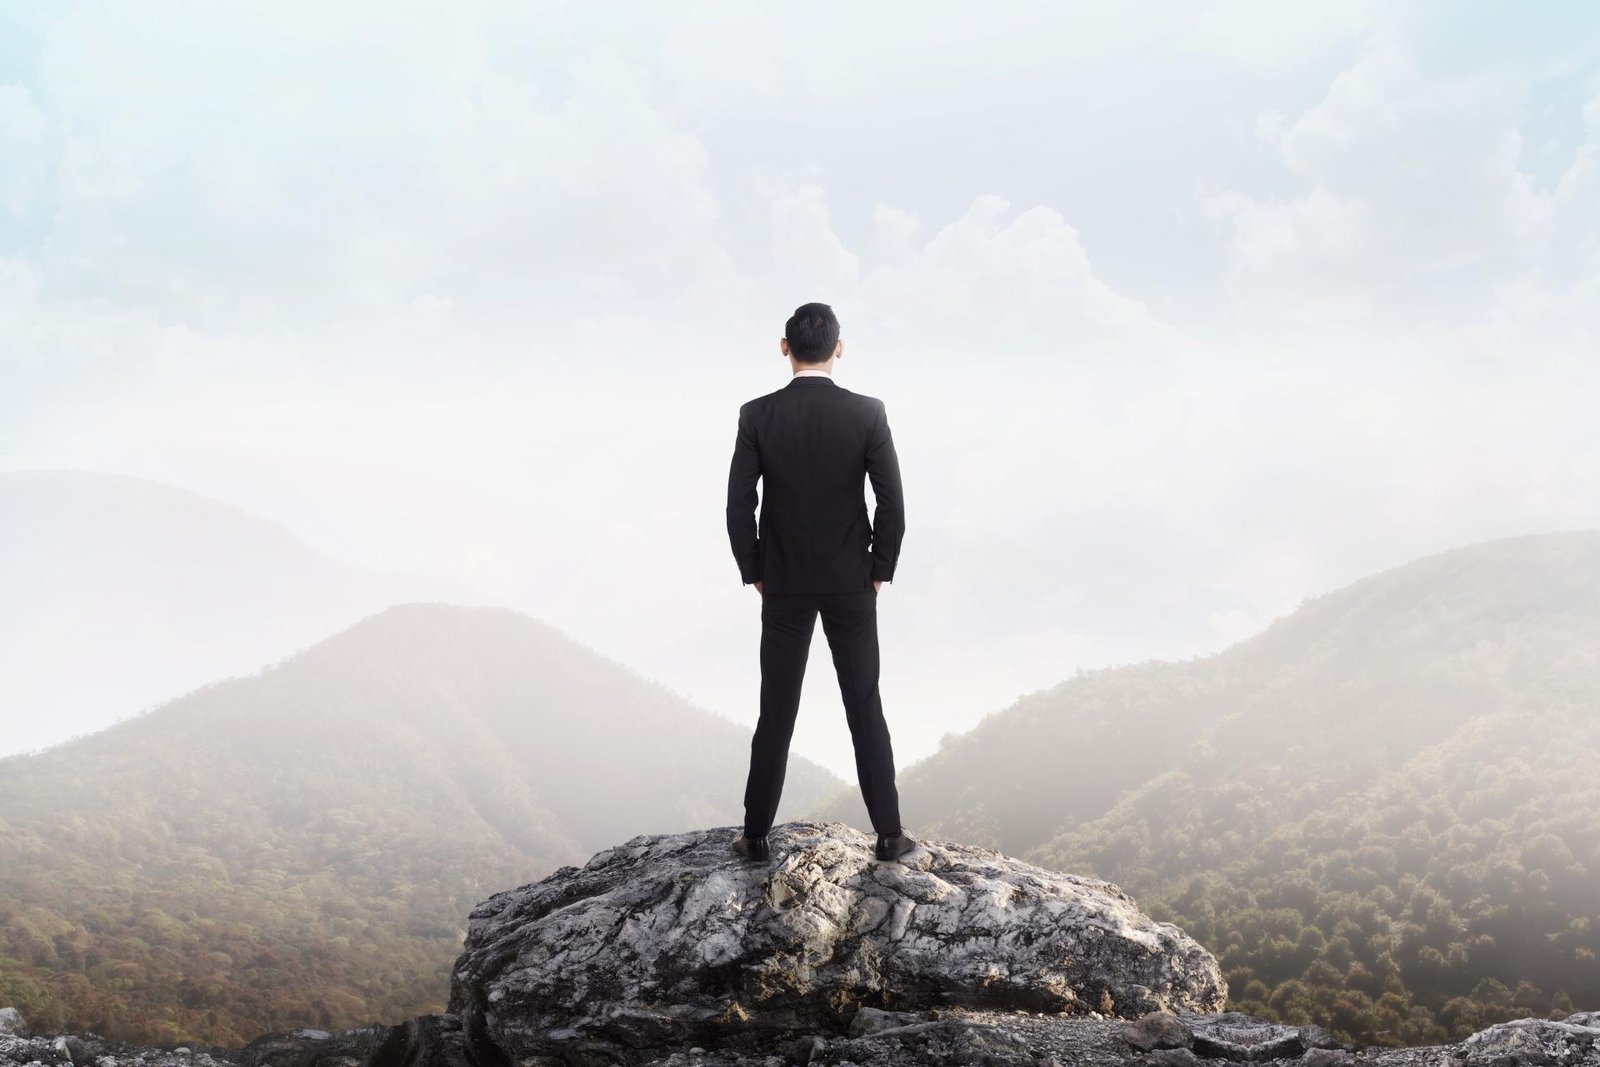 Uma homem usando terno, de costas e no alto de uma grande pedra, admirando a paisagem